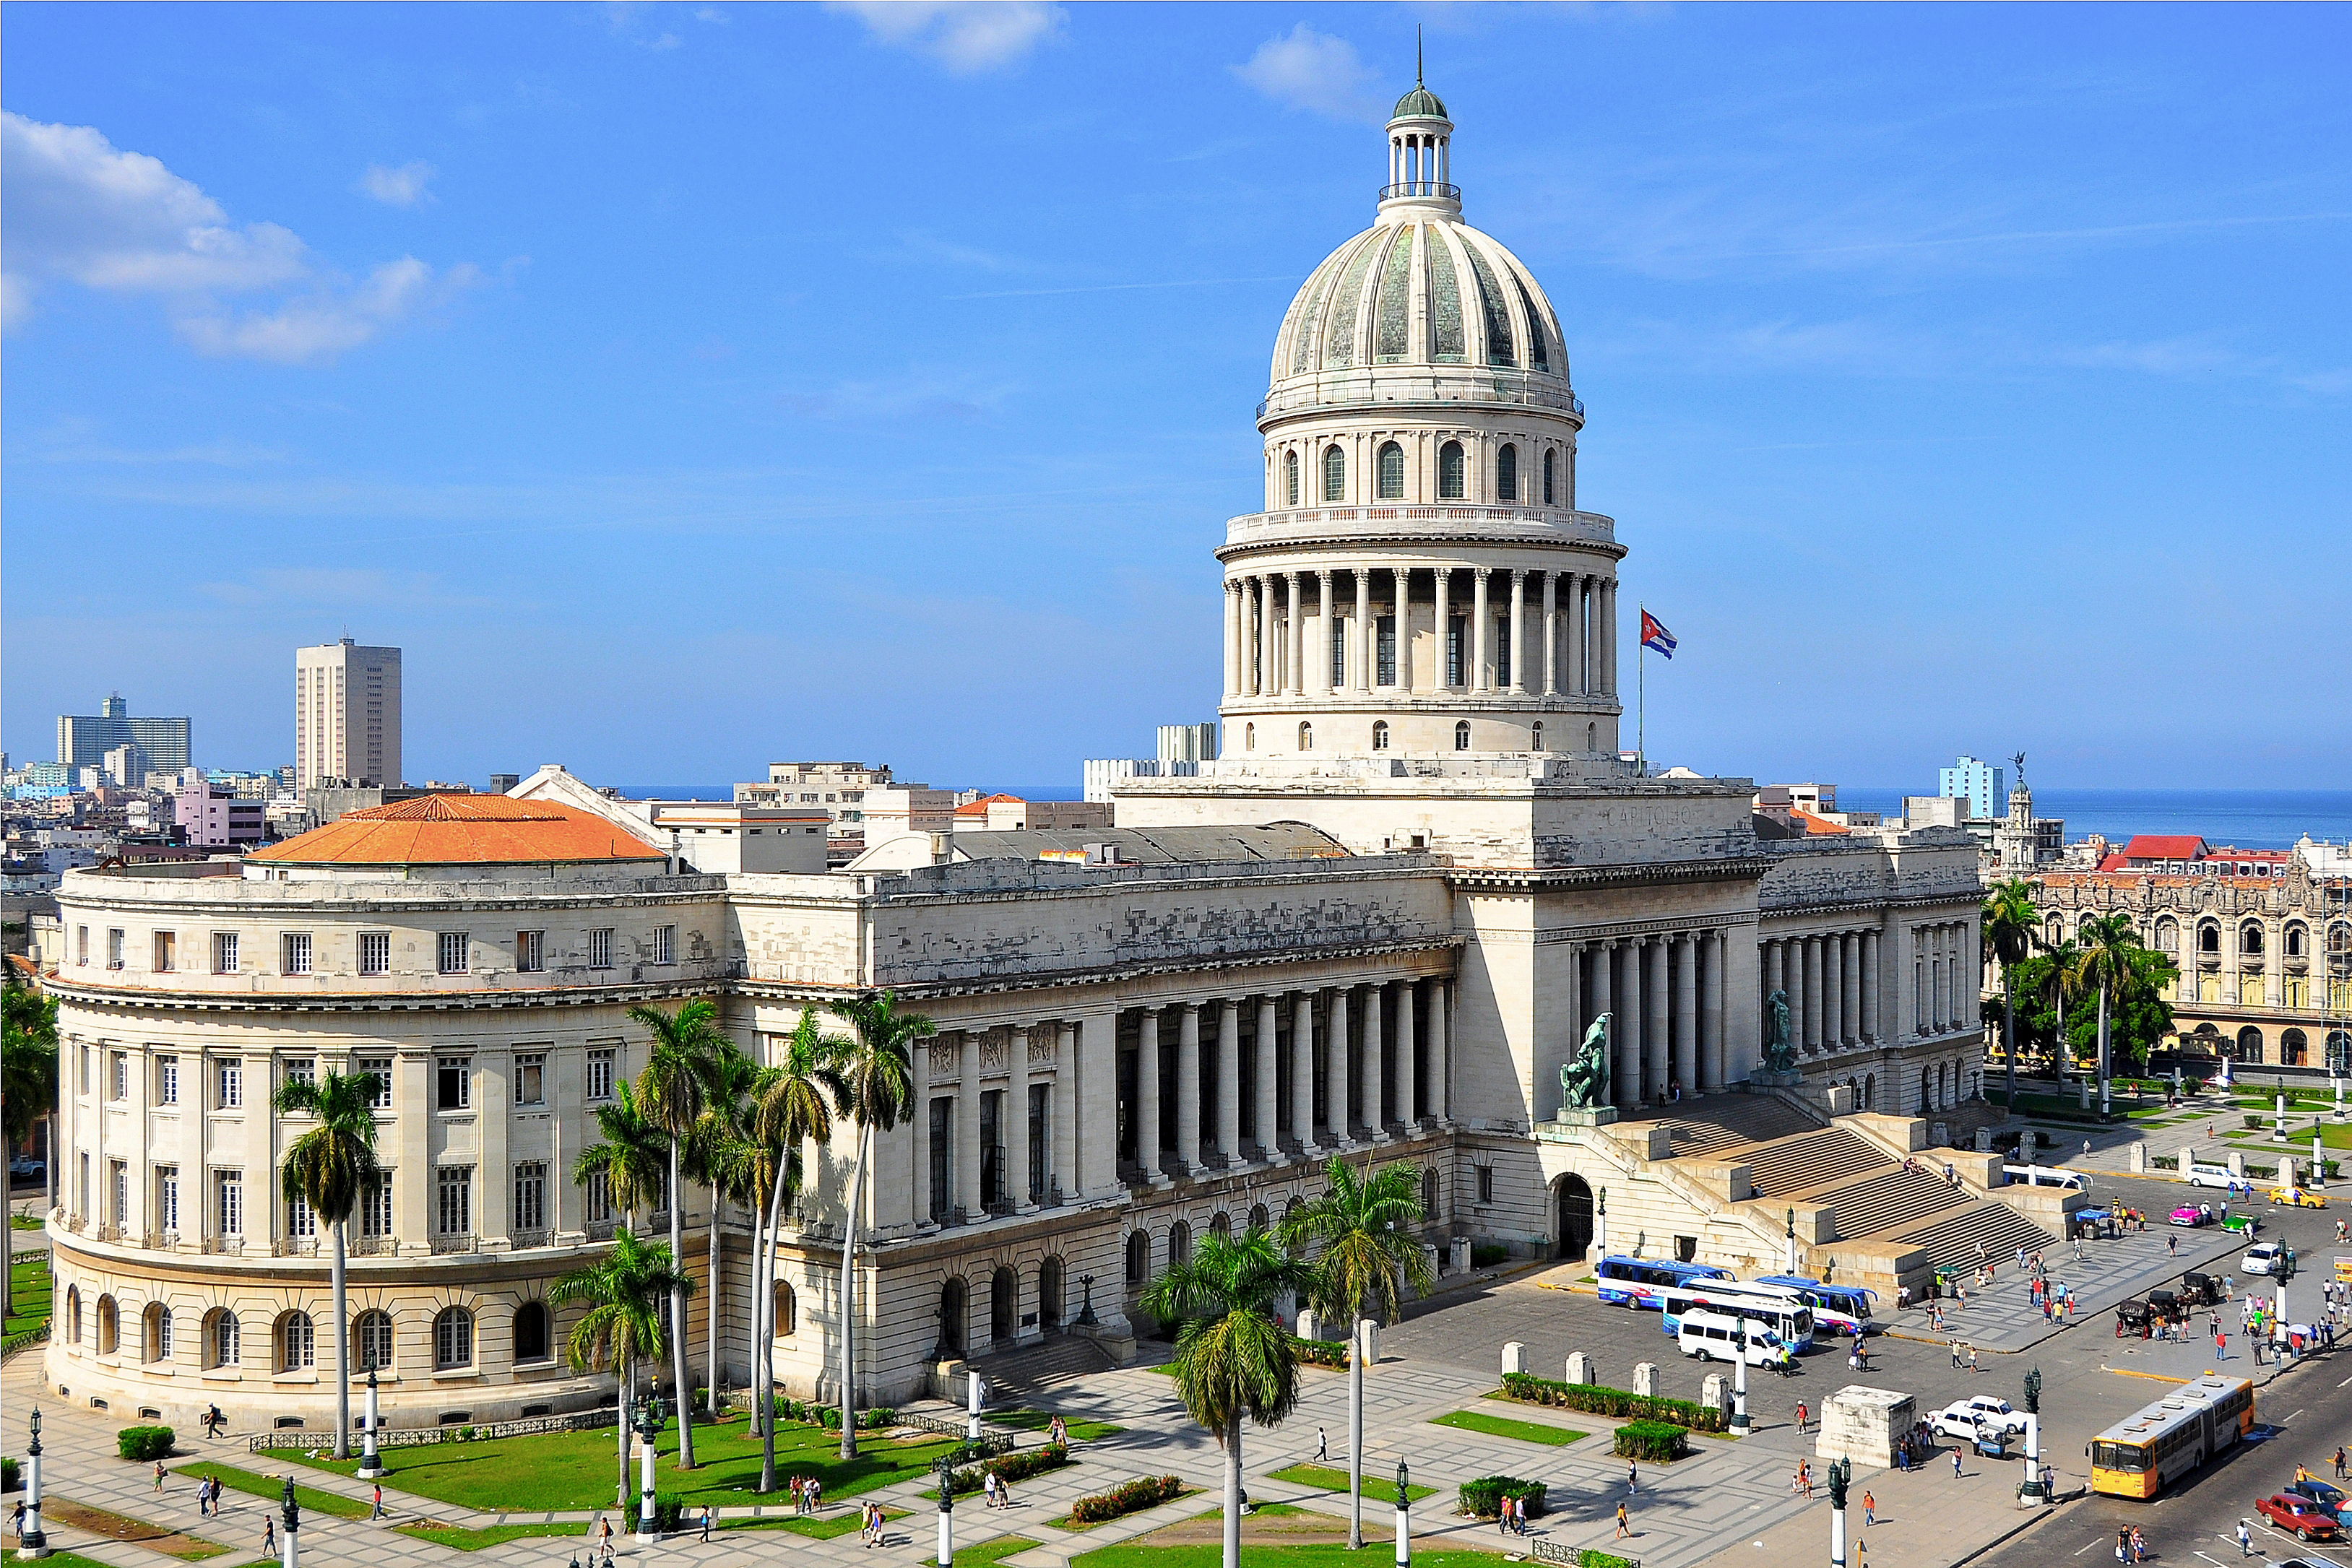 Image of the El Capitolio in Cuba.